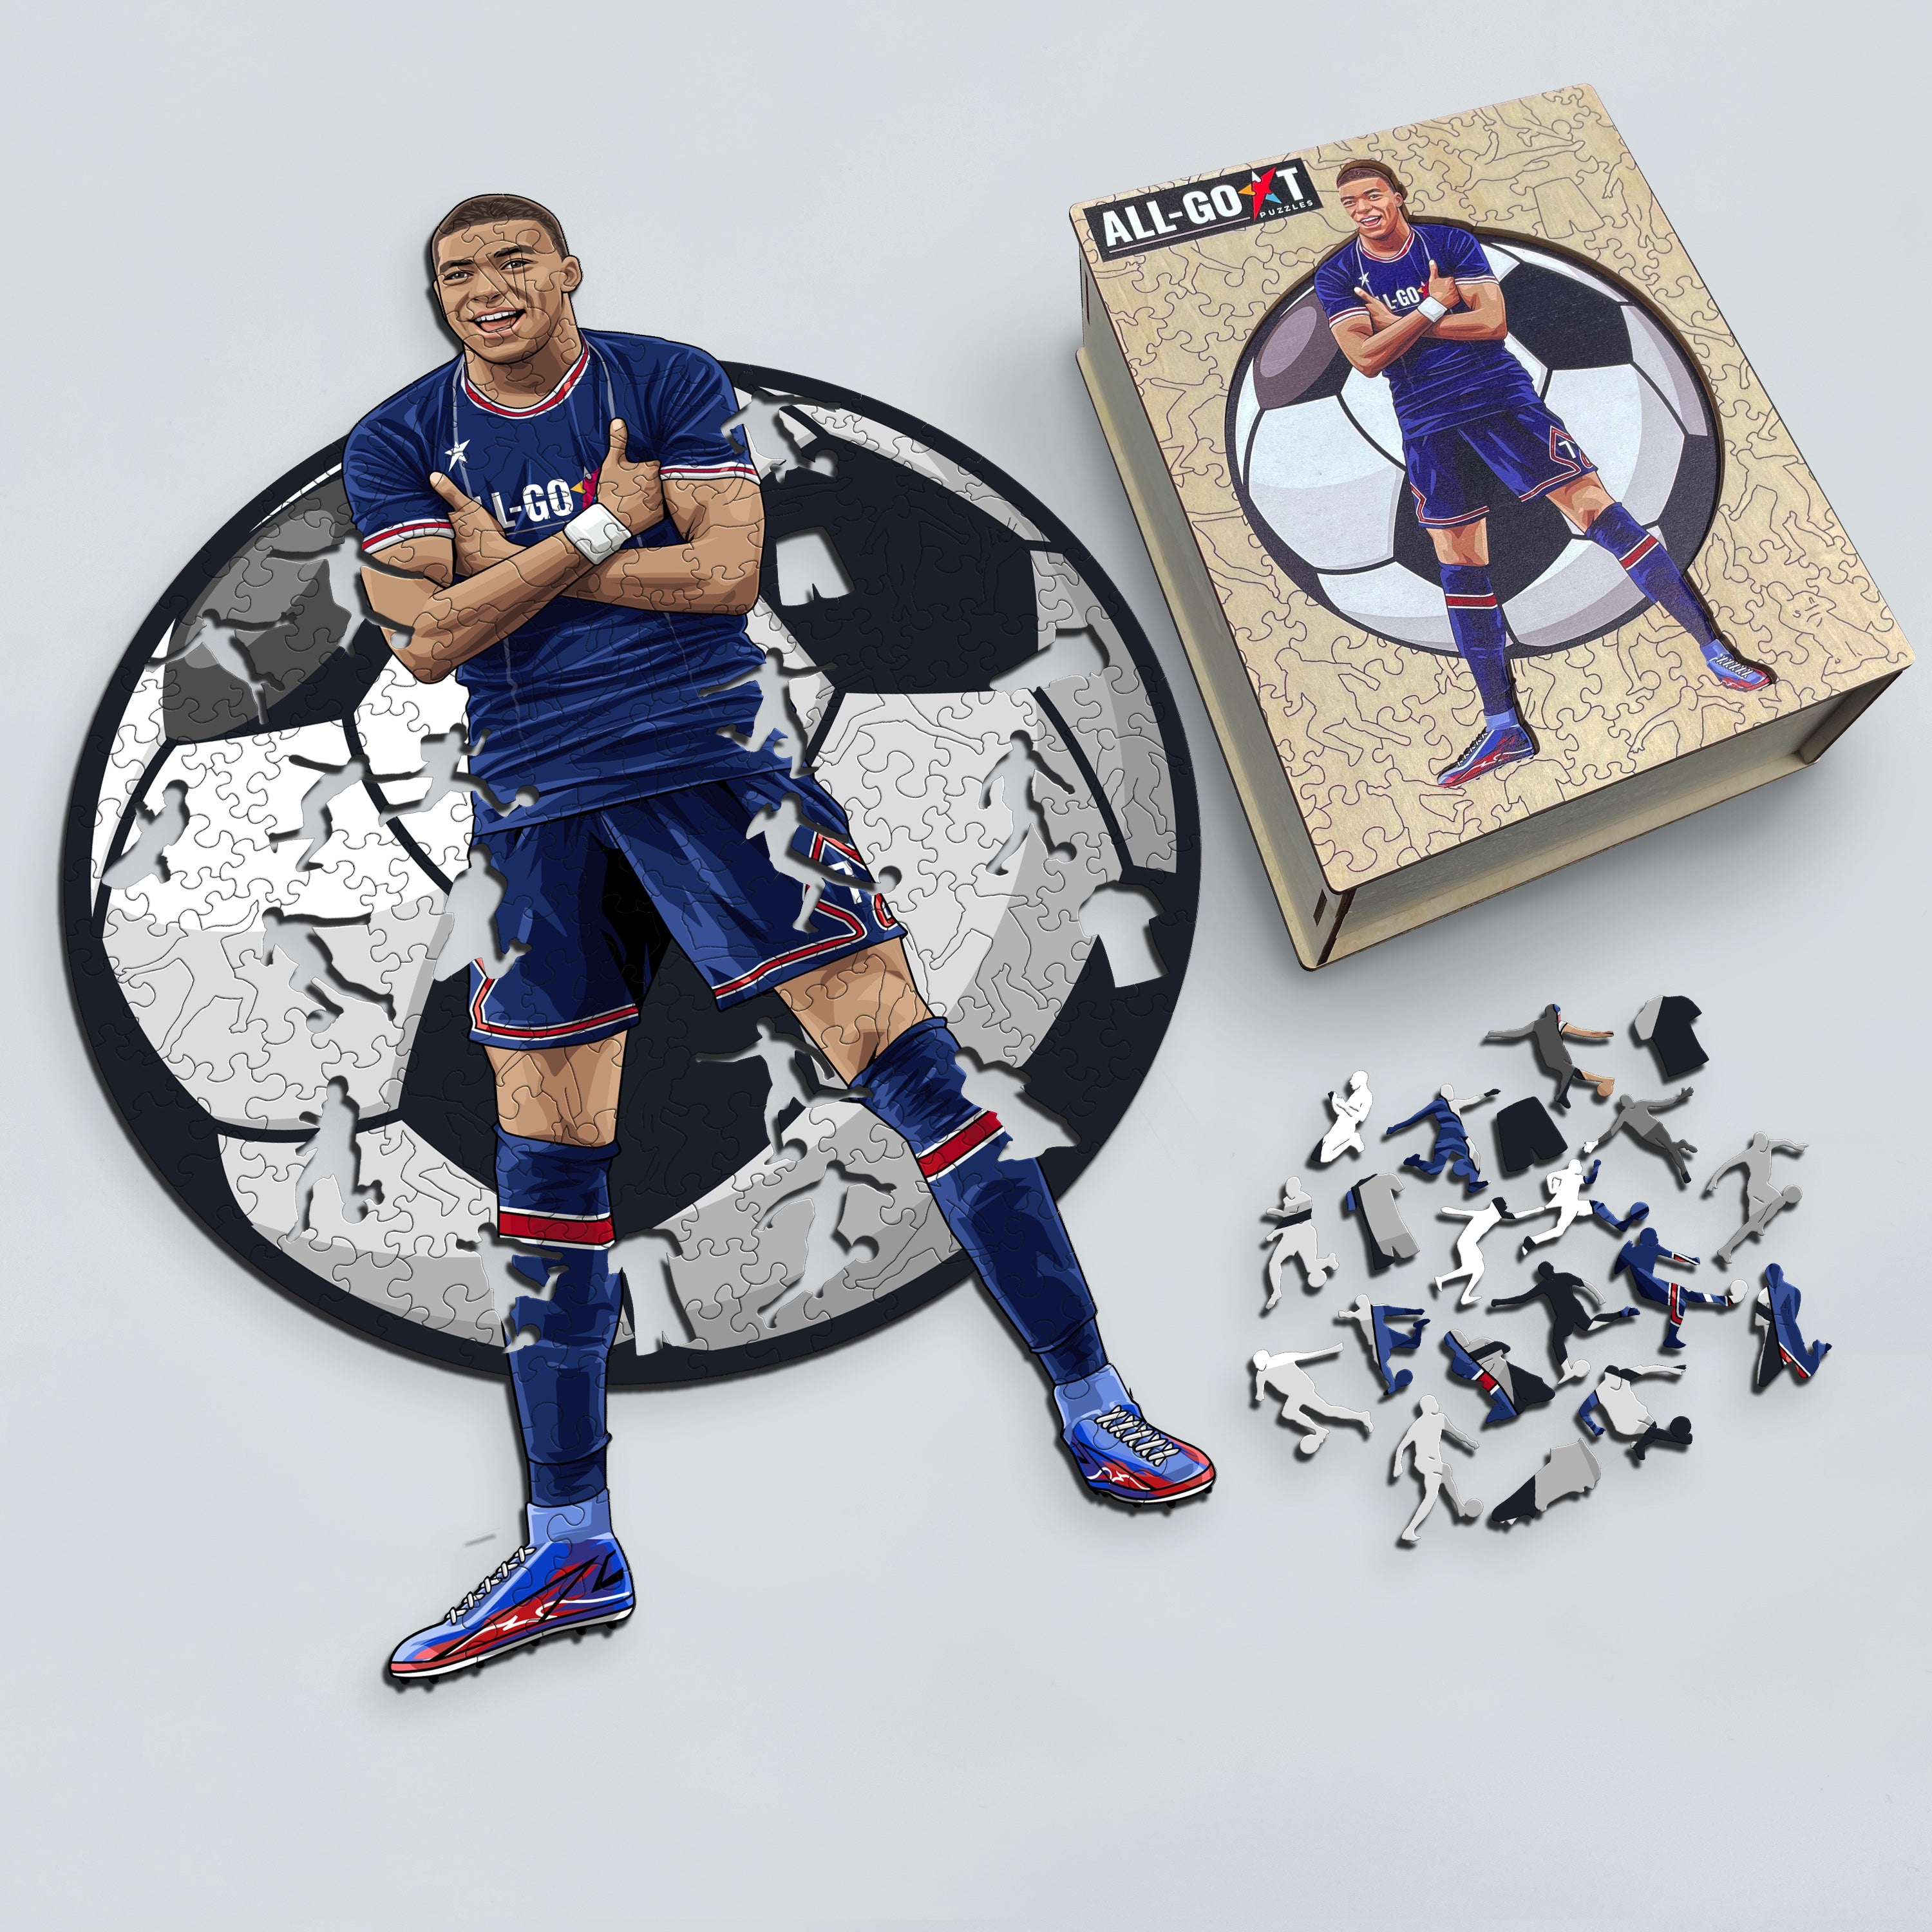 Official Kylian Mbappe PSG Paris Saint Germain 150 Piece Wooden Puzzle New